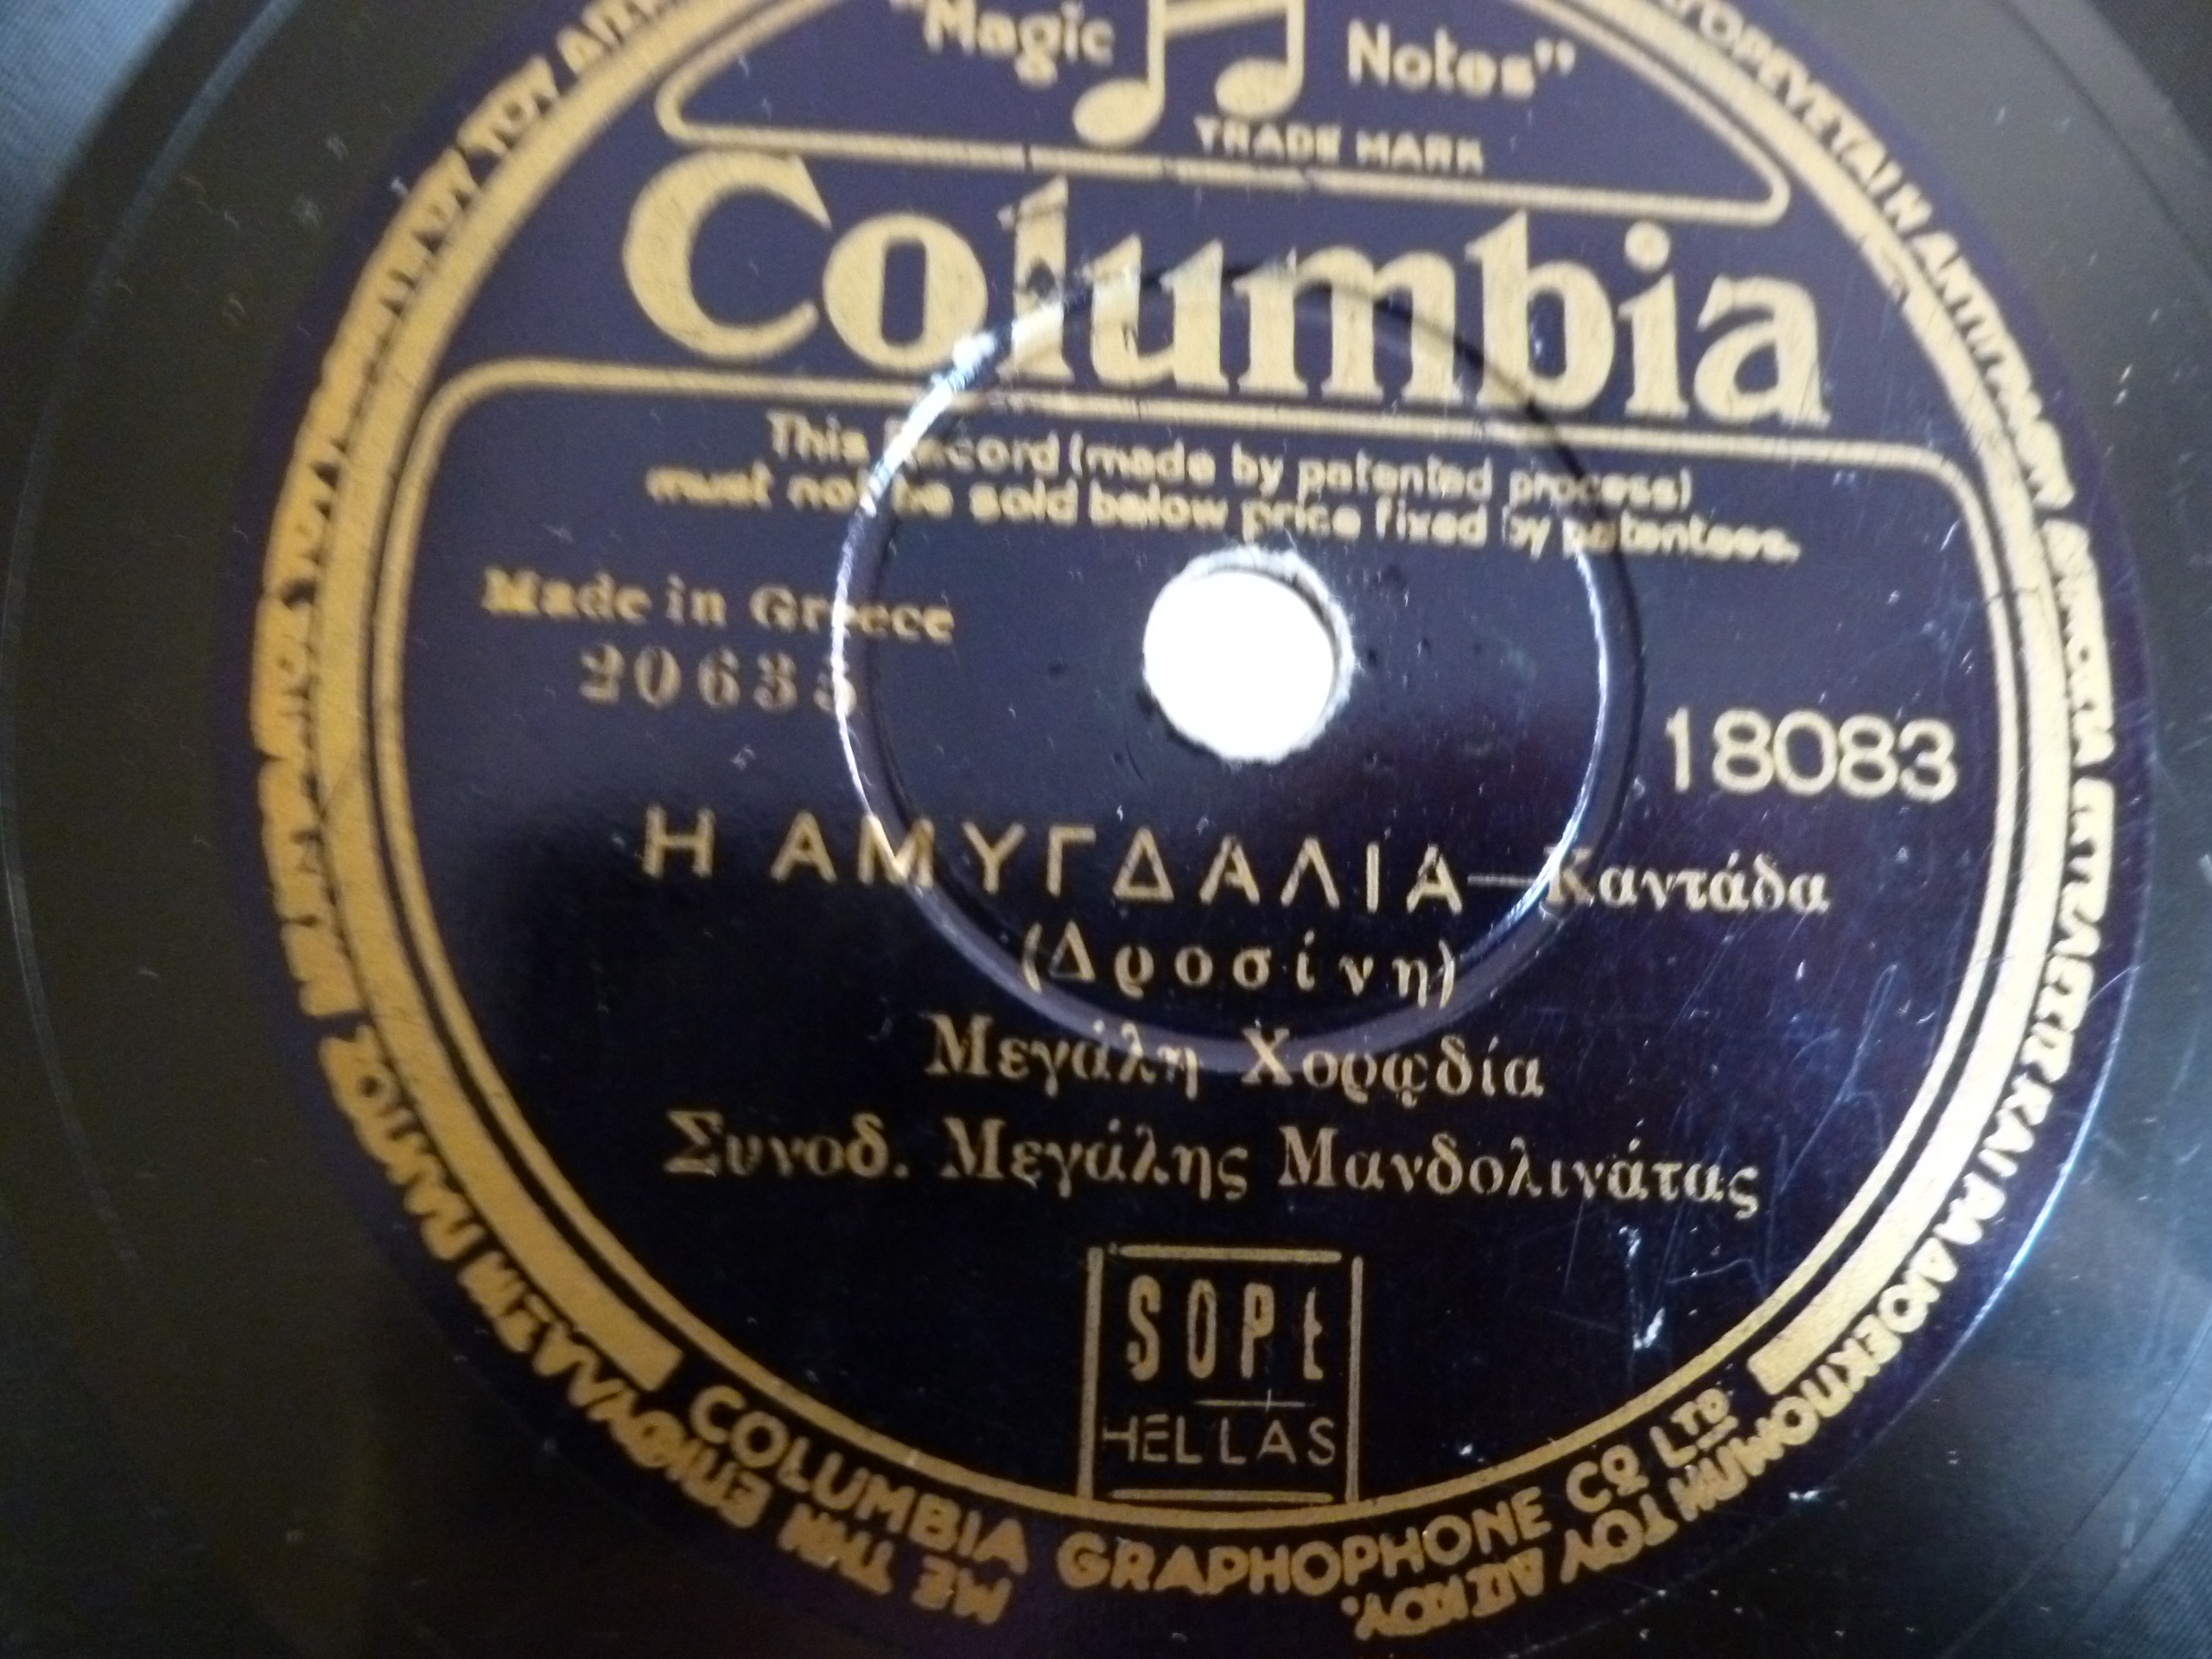 Η Αμυγδαλιά - Γ.Δροσίνης - Columbia Ελλάδος - Μεγάλη χορωδία-Συνοδεία μεγάλη Μανδολινάτας.